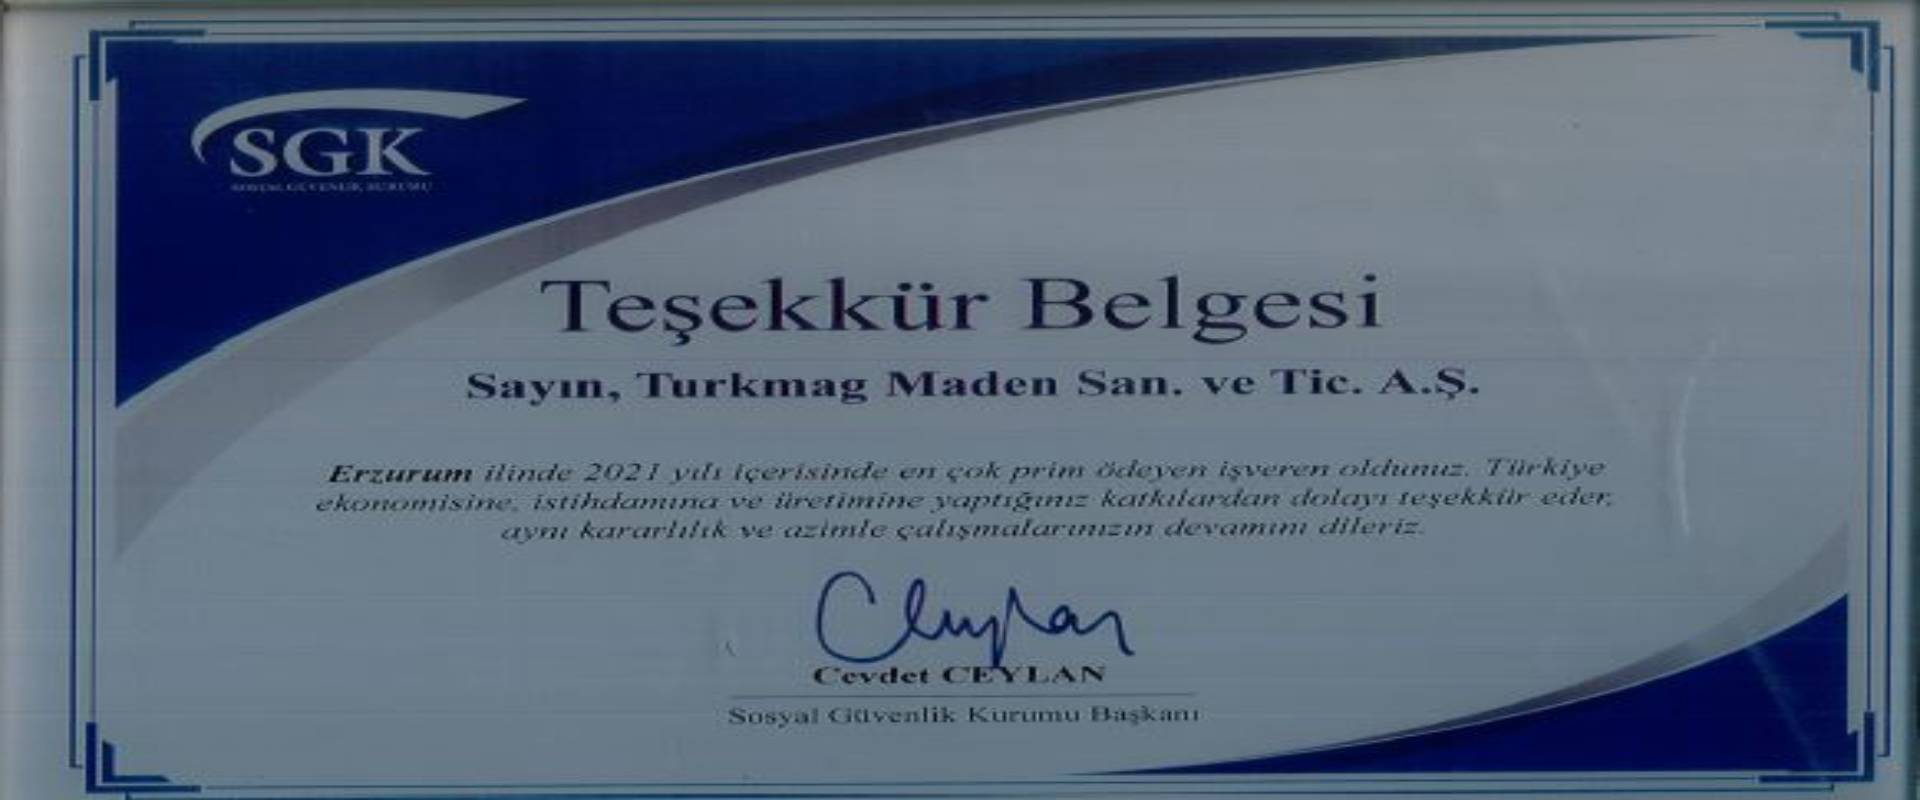 Sosyal Güvenlik Kurumu (SGK) Teşekkür Belgesi - TurkMag